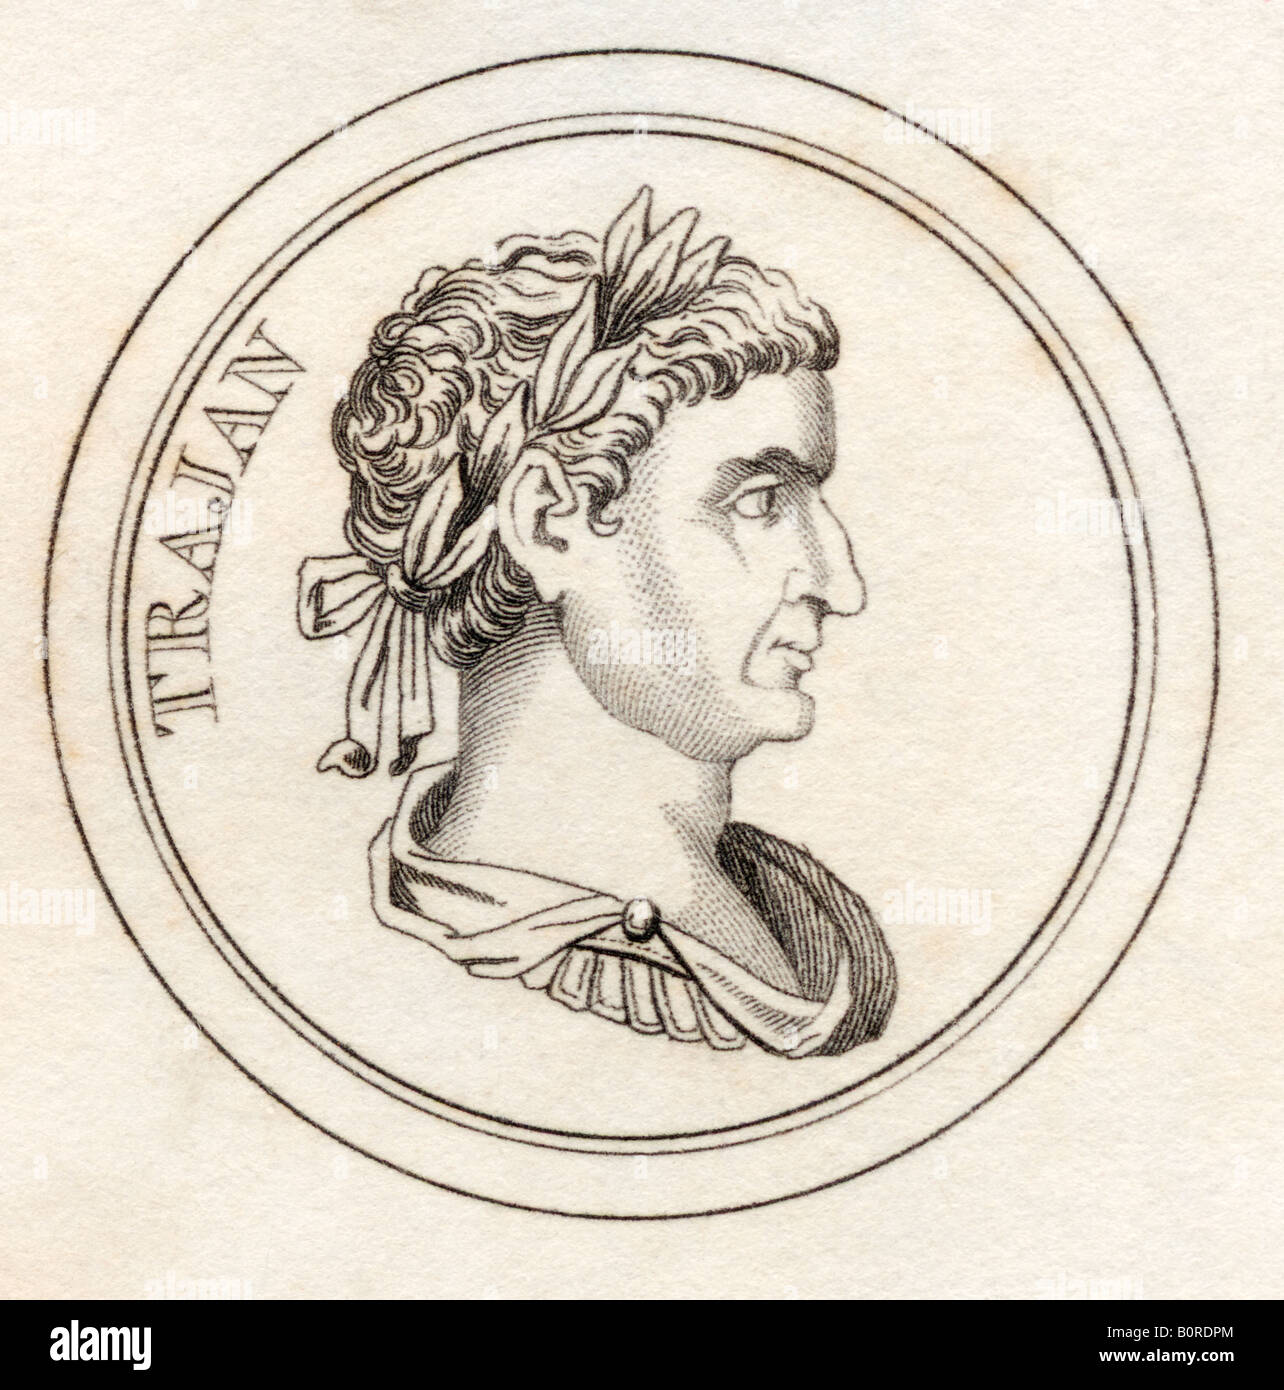 Trajan, Marcus Ulpius Nerva Traianus, AD53 - 117. Römischer Kaiser. Aus dem Buch Crabbs Historical Dictionary, veröffentlicht 1825. Stockfoto